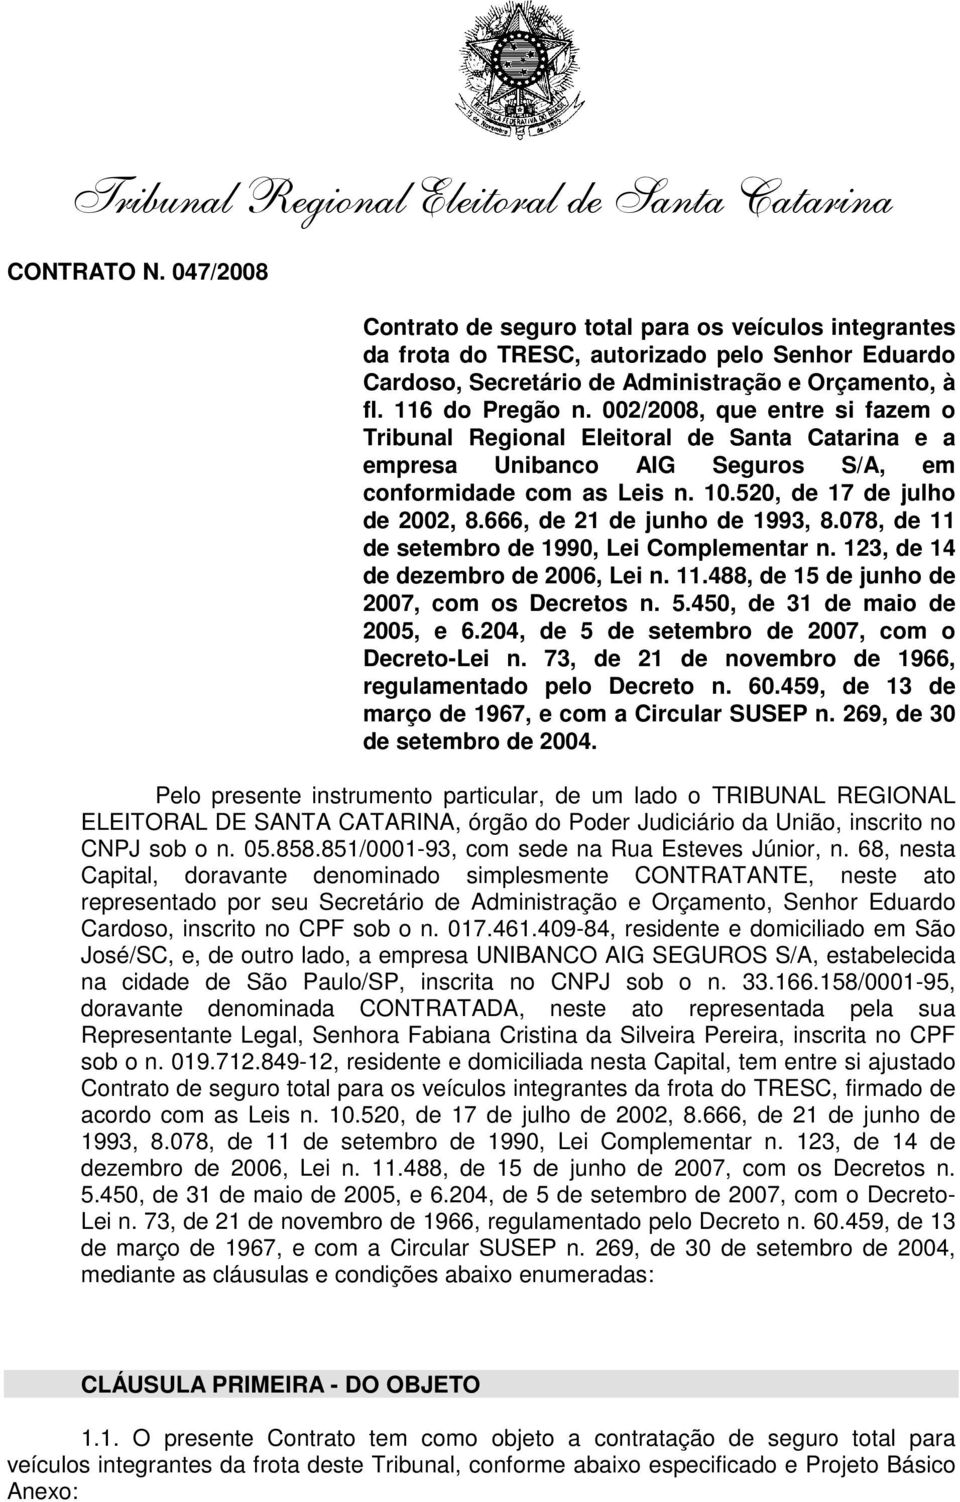 002/2008, que entre si fazem o Tribunal Regional Eleitoral de Santa Catarina e a empresa Unibanco AIG Seguros S/A, em conformidade com as Leis n. 10.520, de 17 de julho de 2002, 8.